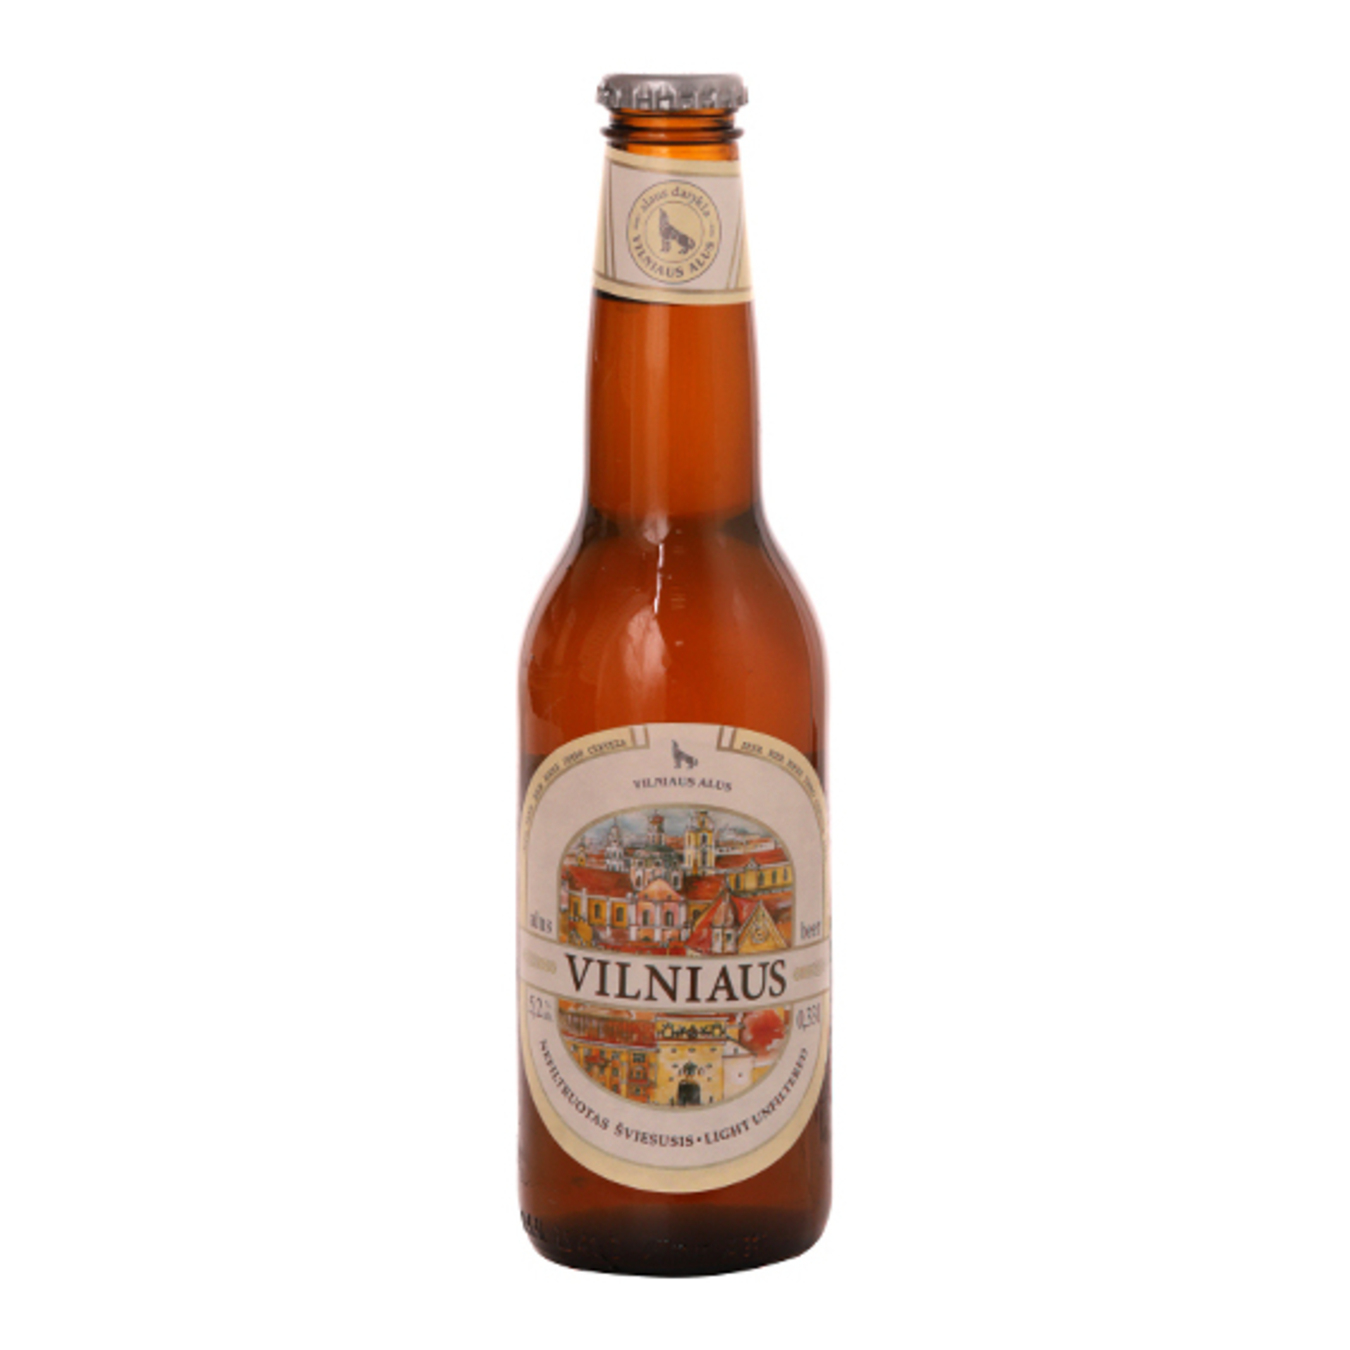 Пиво Vilniaus Alus світле нефільтроване 5,2% 0,33л